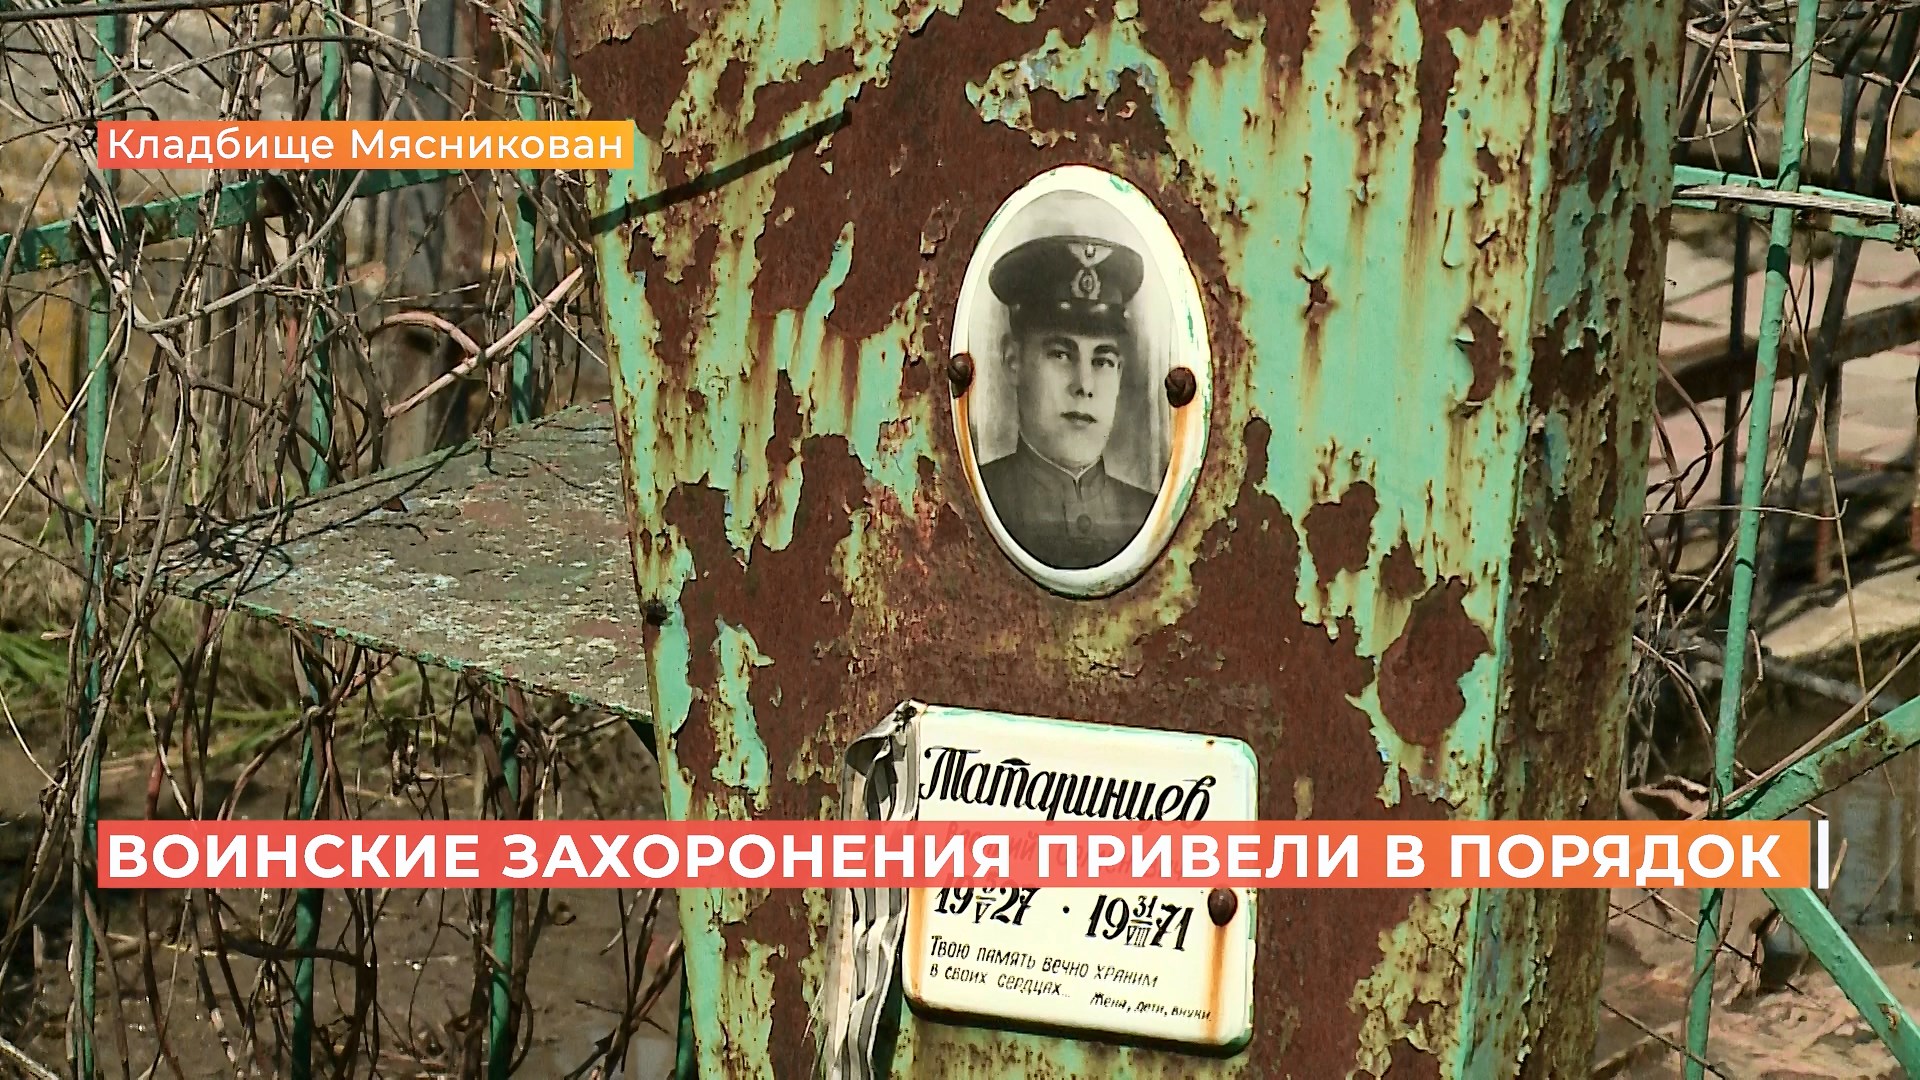 Воинские захоронения на кладбище Мясникован привели в порядок ко Дню Победы